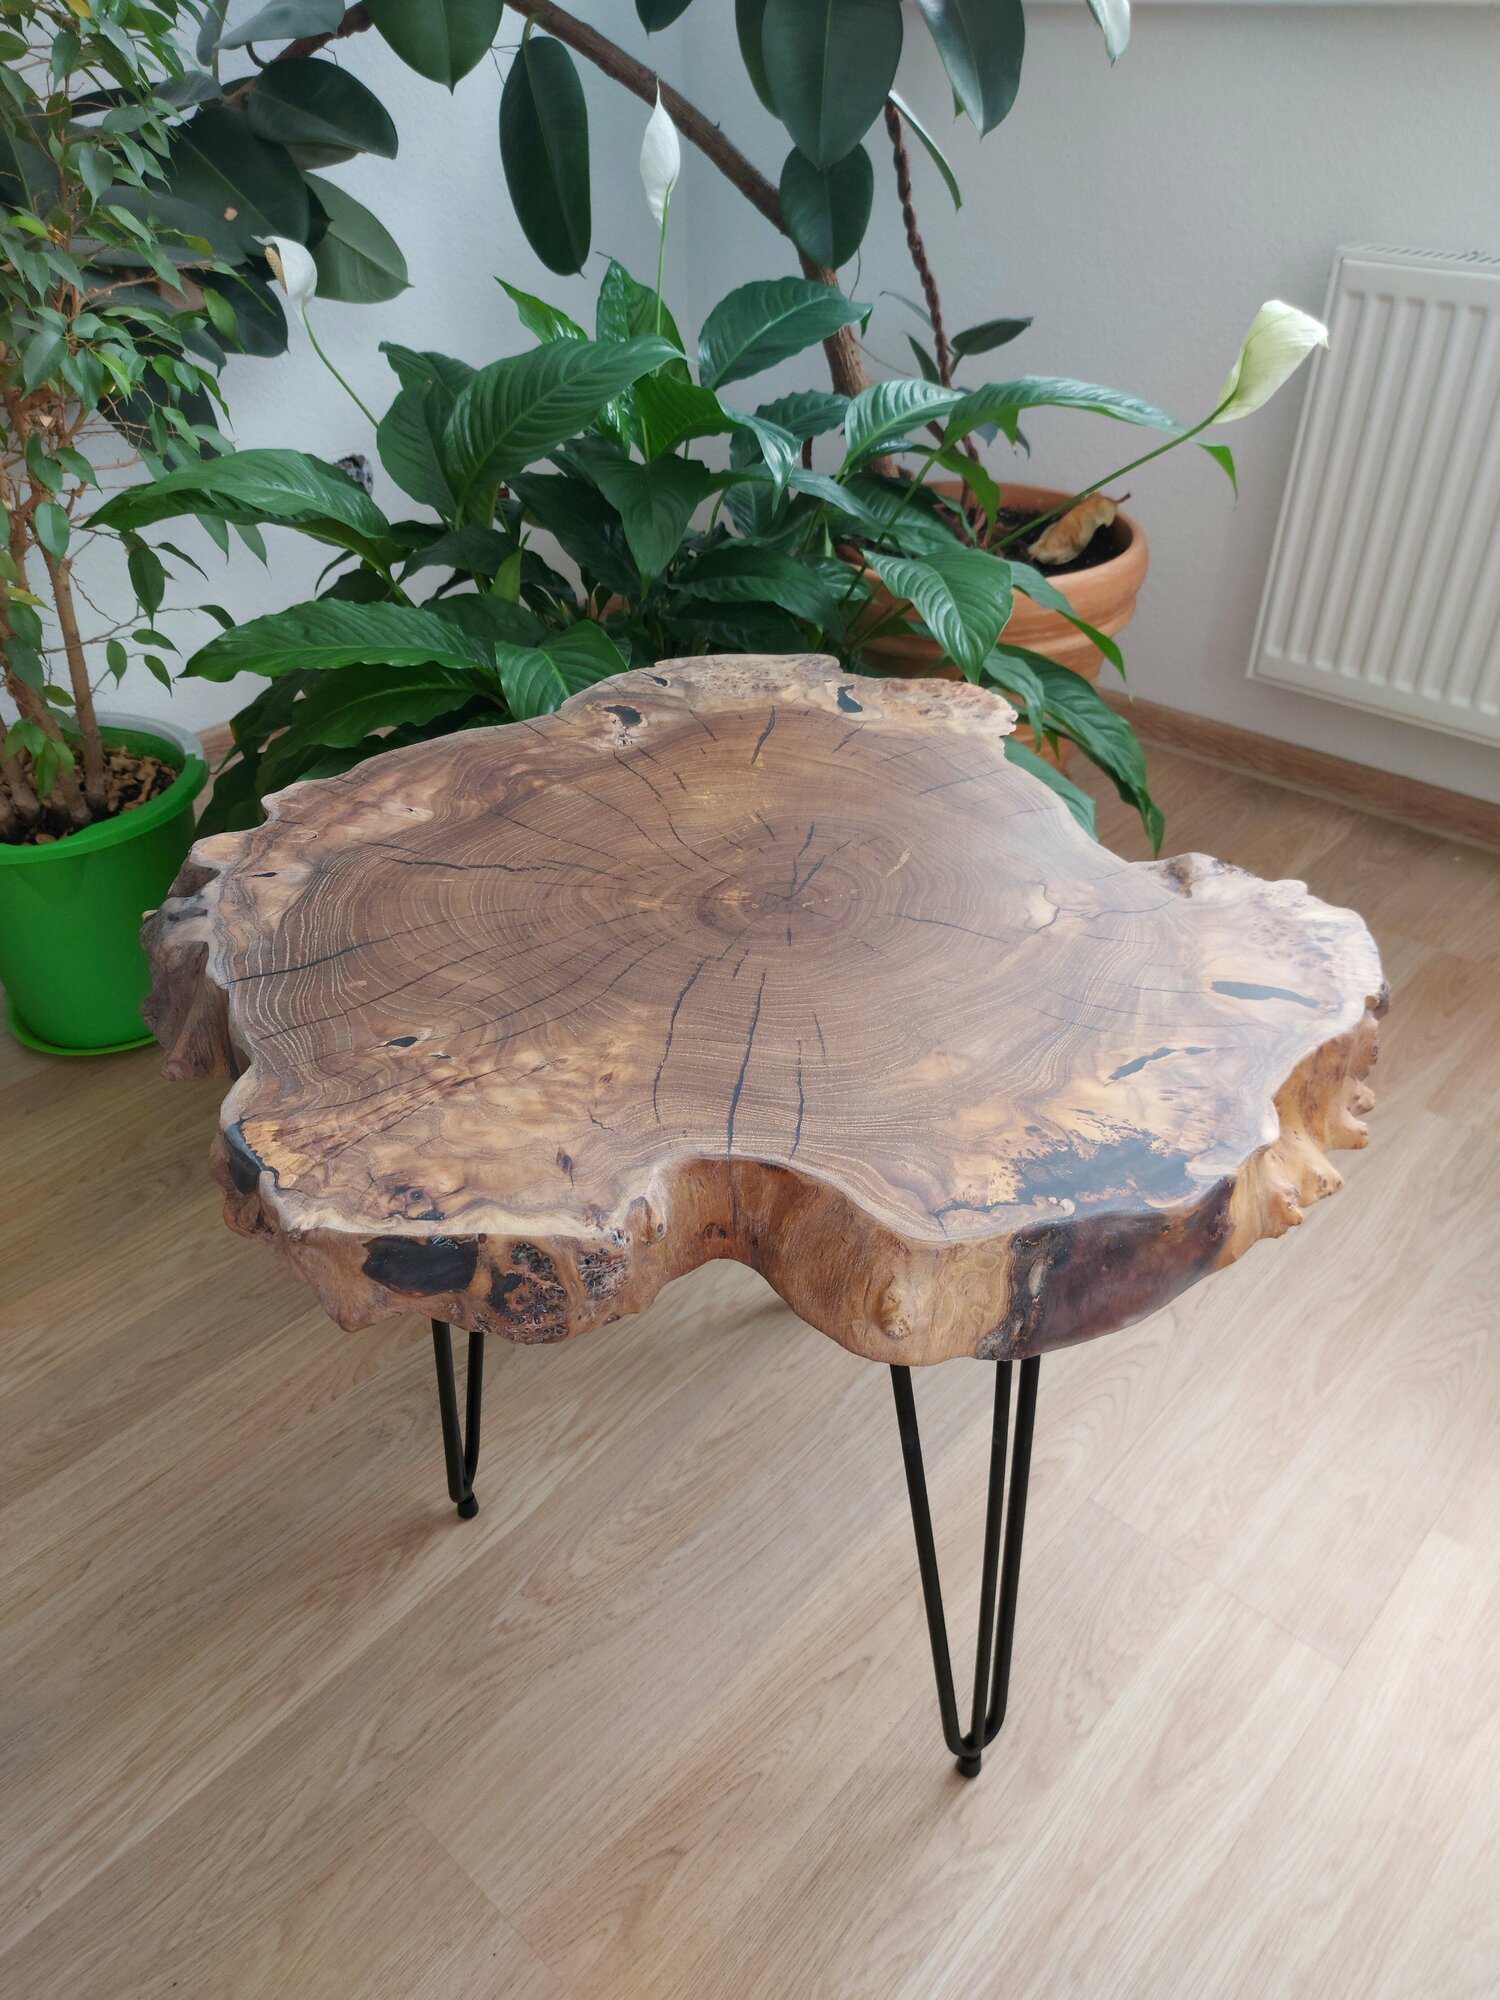 Журнальный столик из натурального массива дерева Vamstol